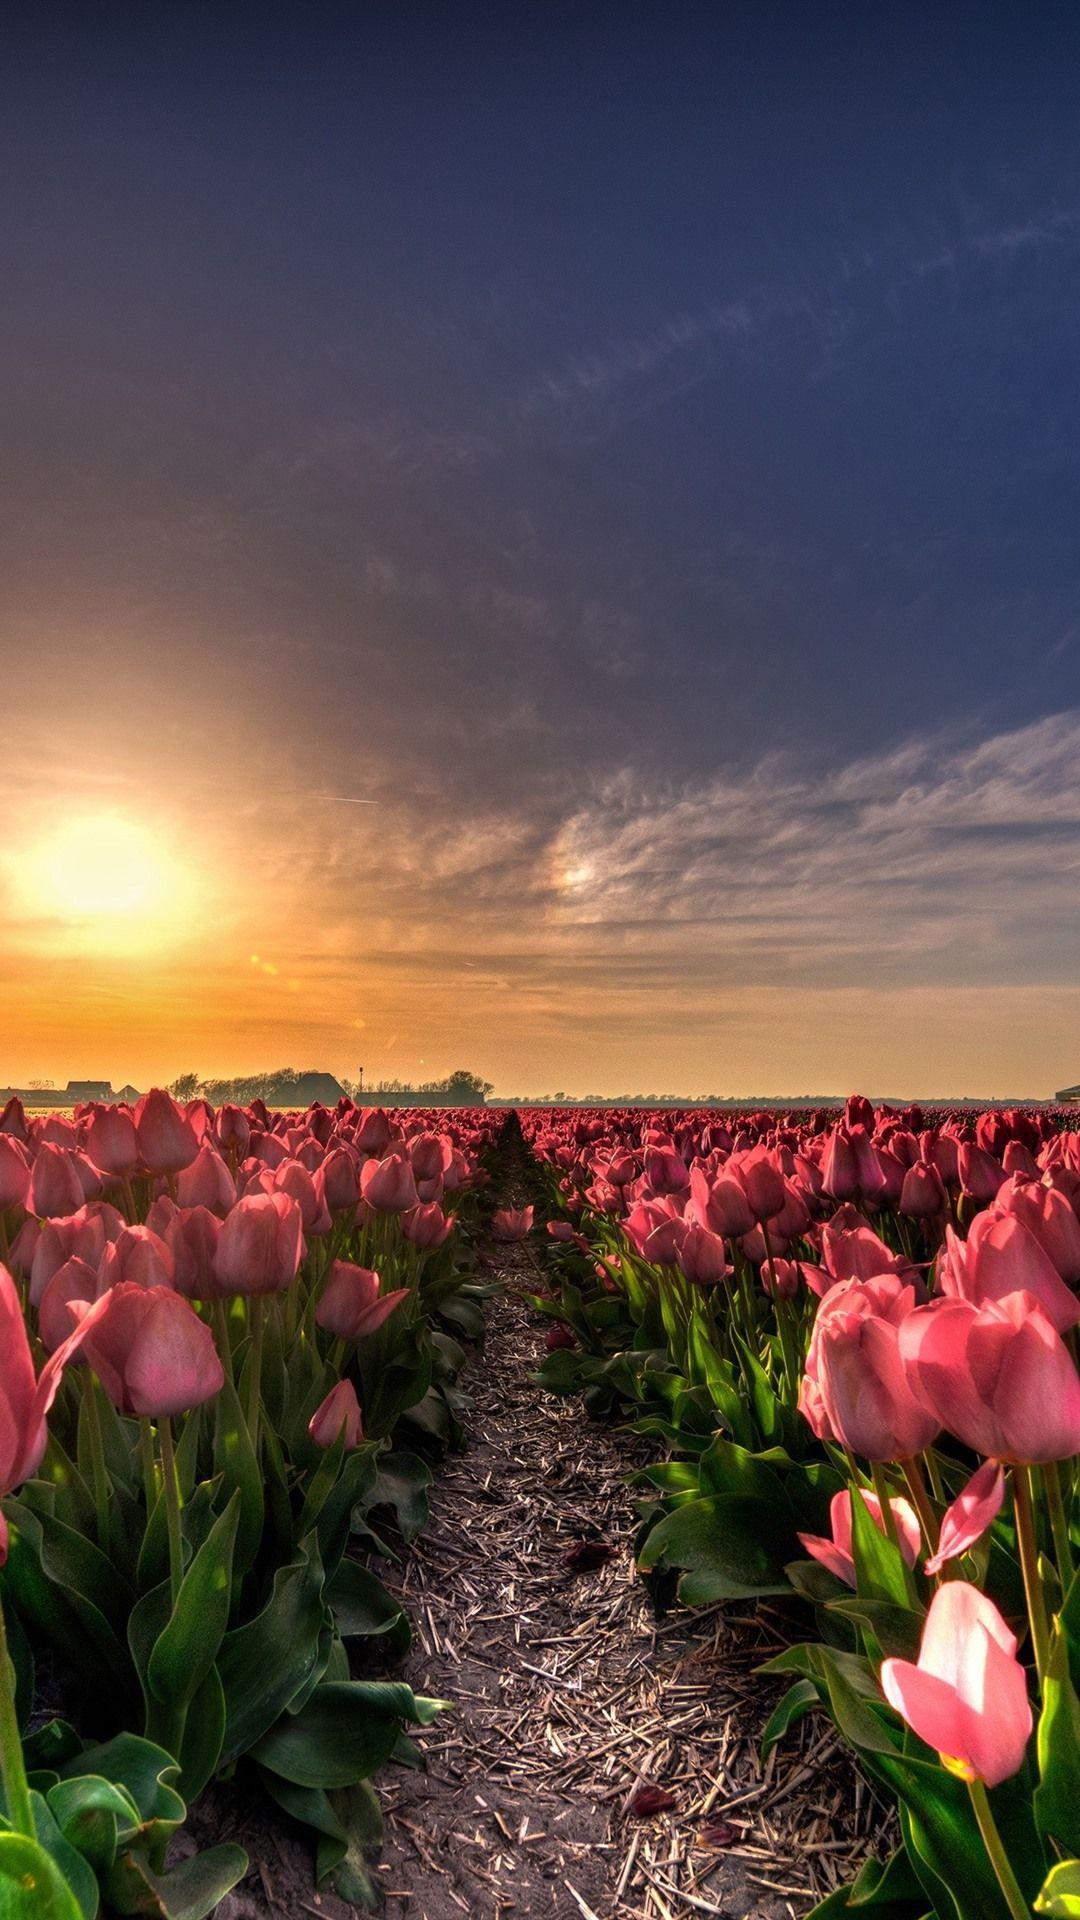 Hình nền hoàng hôn mùa xuân với những màu sắc tràn đầy năng lượng và sức sống sẽ làm cho ai nhìn thấy đều phải say mê. Hãy cảm nhận vẻ đẹp này với hình ảnh rực rỡ của hoa tulip trong ánh hoàng hôn mùa xuân.